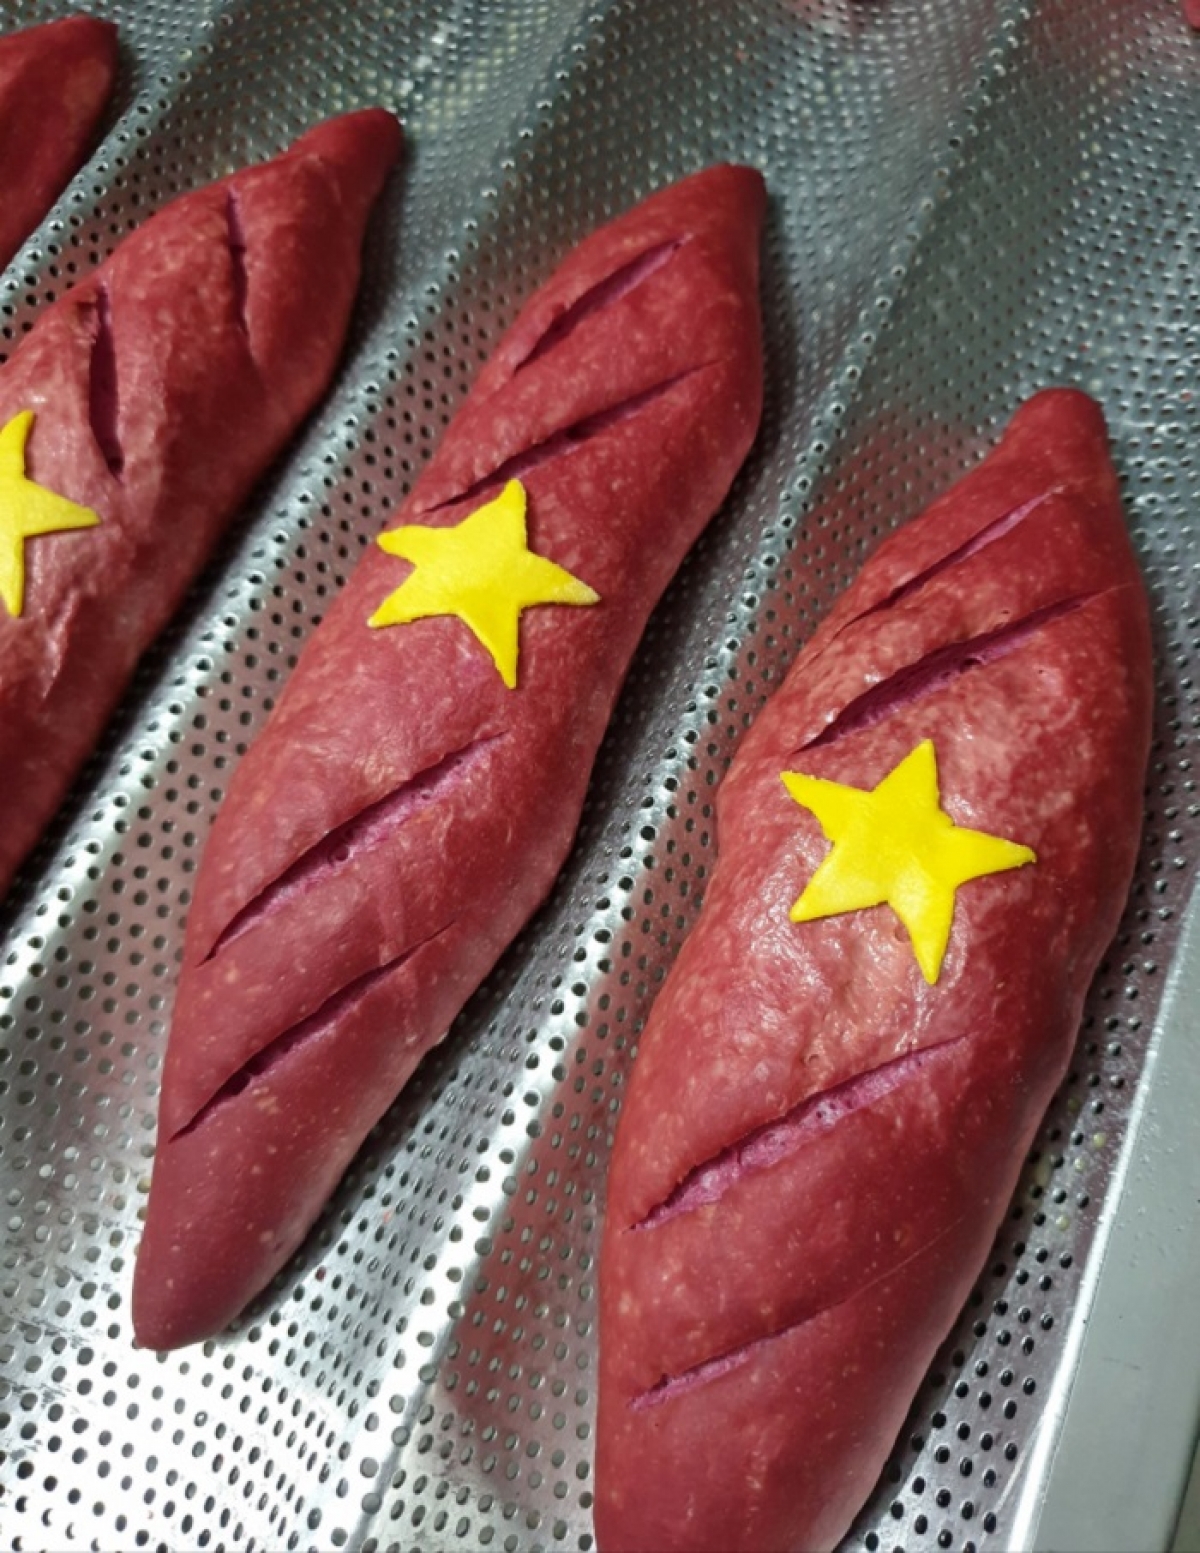 Kích thước như chiếc bánh mì truyền thống nhưng hình thức lại vô cùng ấn tượng với vỏ bánh màu đỏ và ngôi sao vàng được dính giữa chiếc bánh